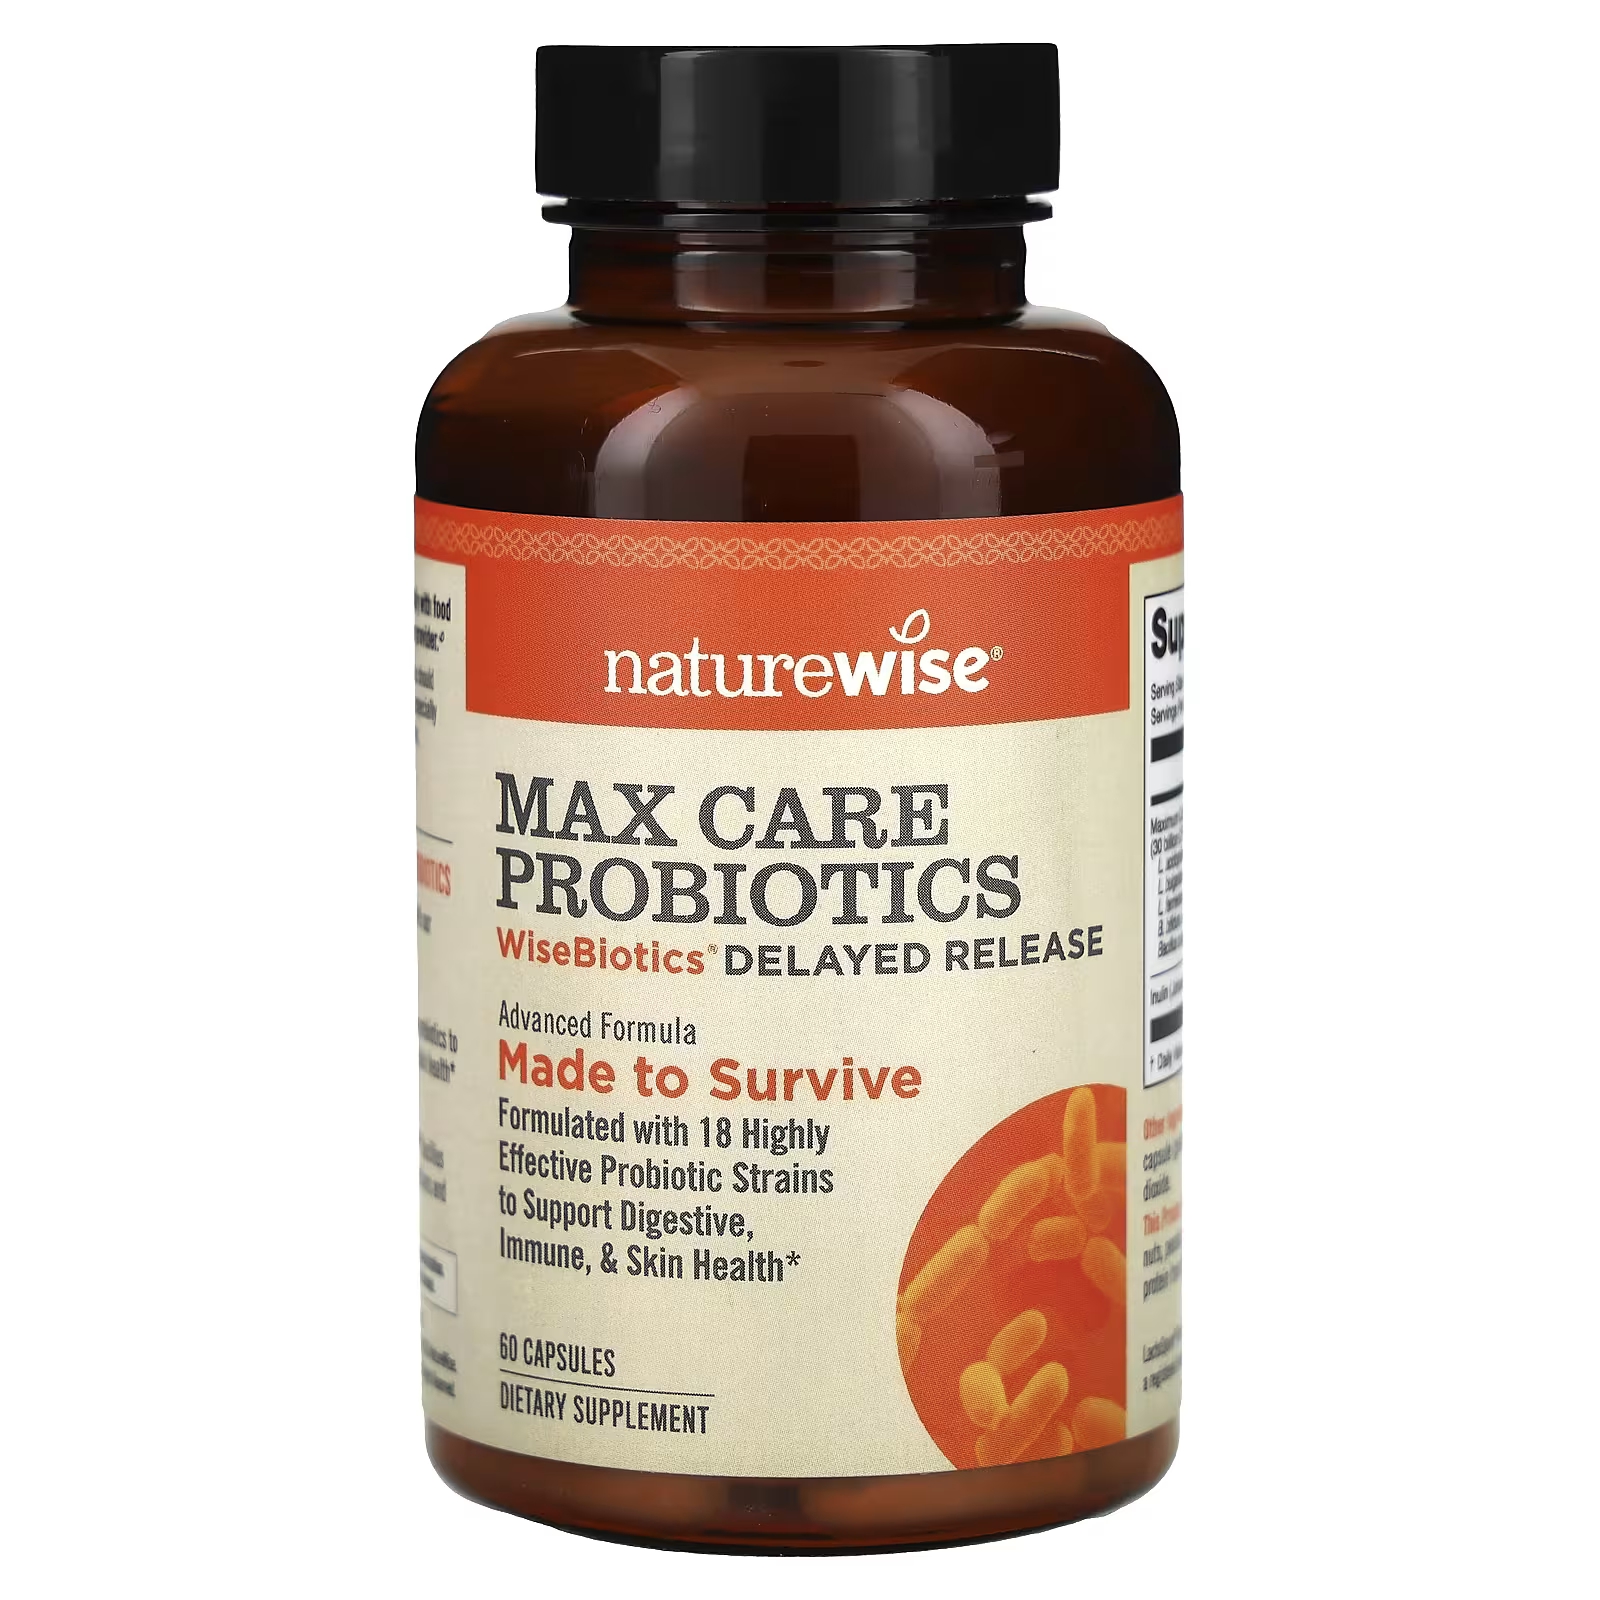 NatureWise Max Care Пробиотики WiseBiotics с отсроченным высвобождением, 60 капсул natural factors keto paleo macrogest 60 капсул с отсроченным высвобождением